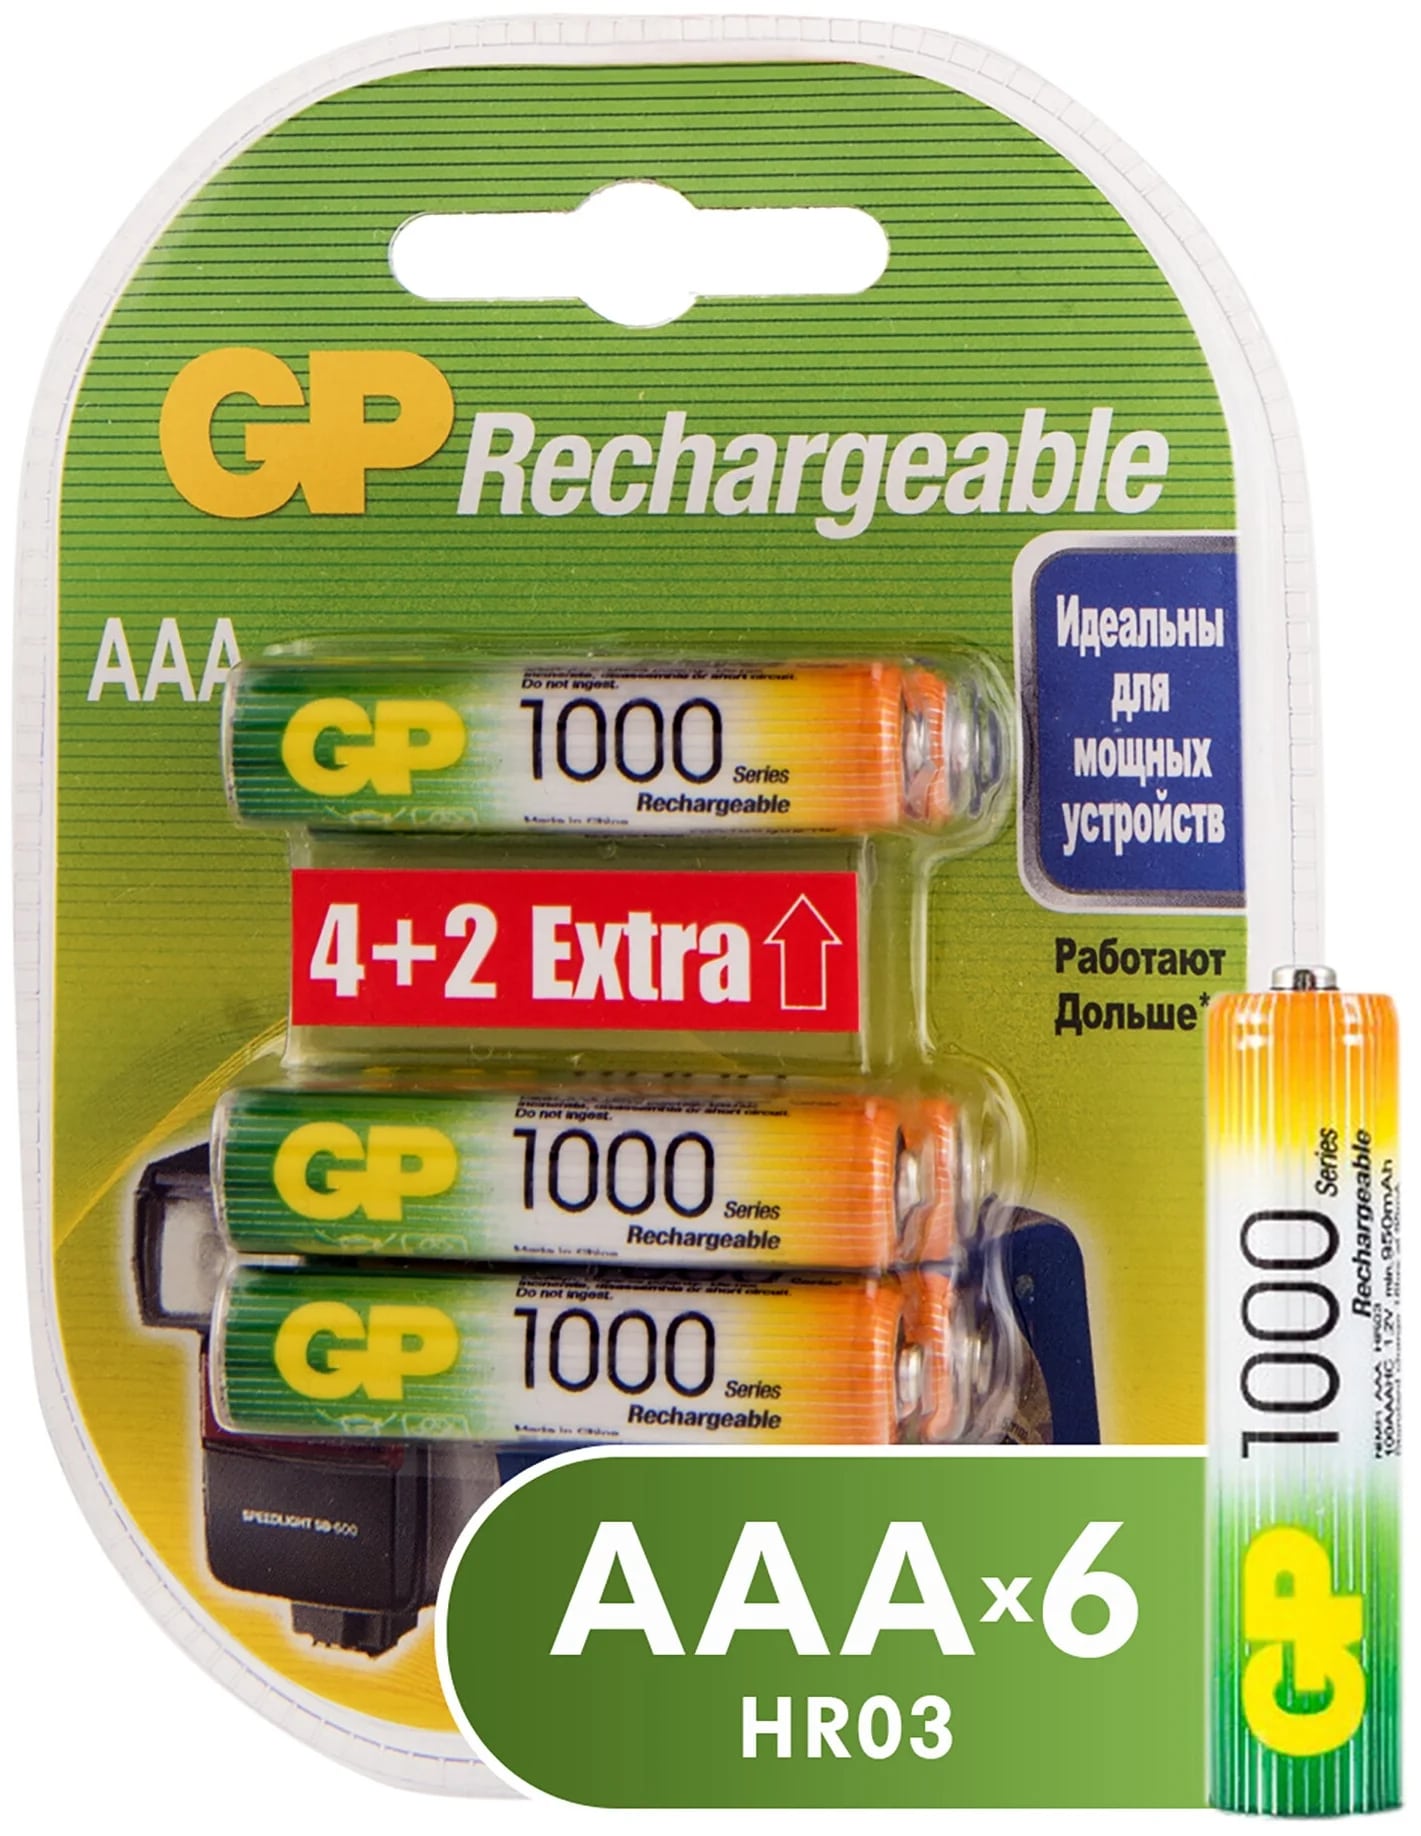 Аккумуляторы GP Batteries перезаряжаемые, AAA, 930 мАч, 6 шт